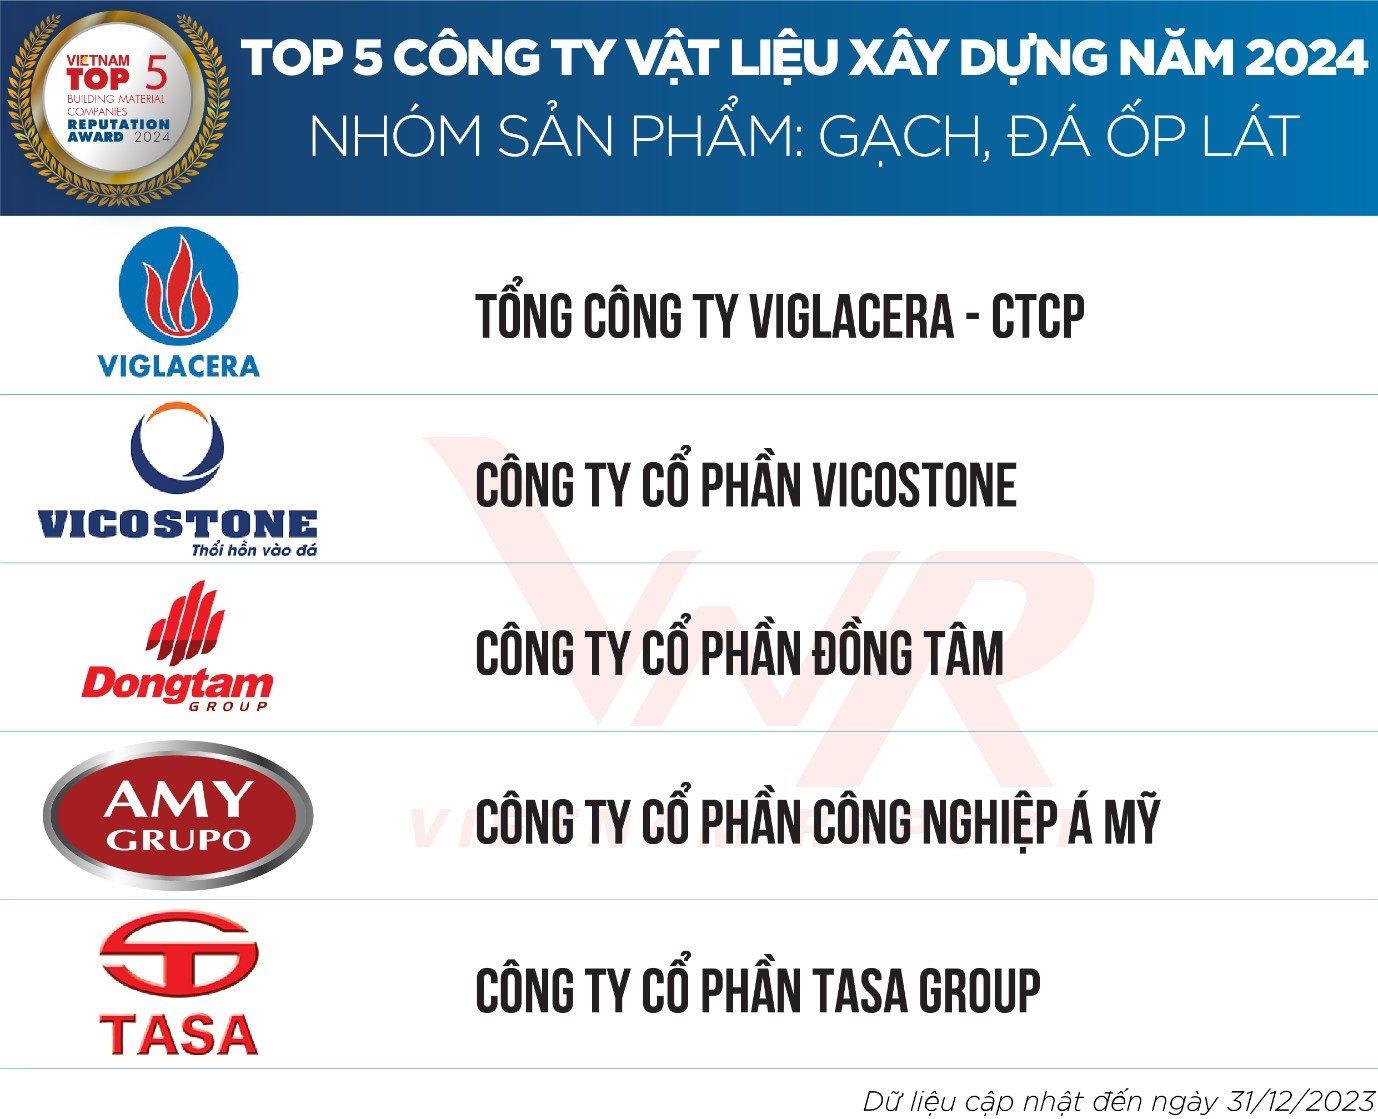 TOP Công ty vật liệu xây dựng 2024 (Theo Vietnam Report)